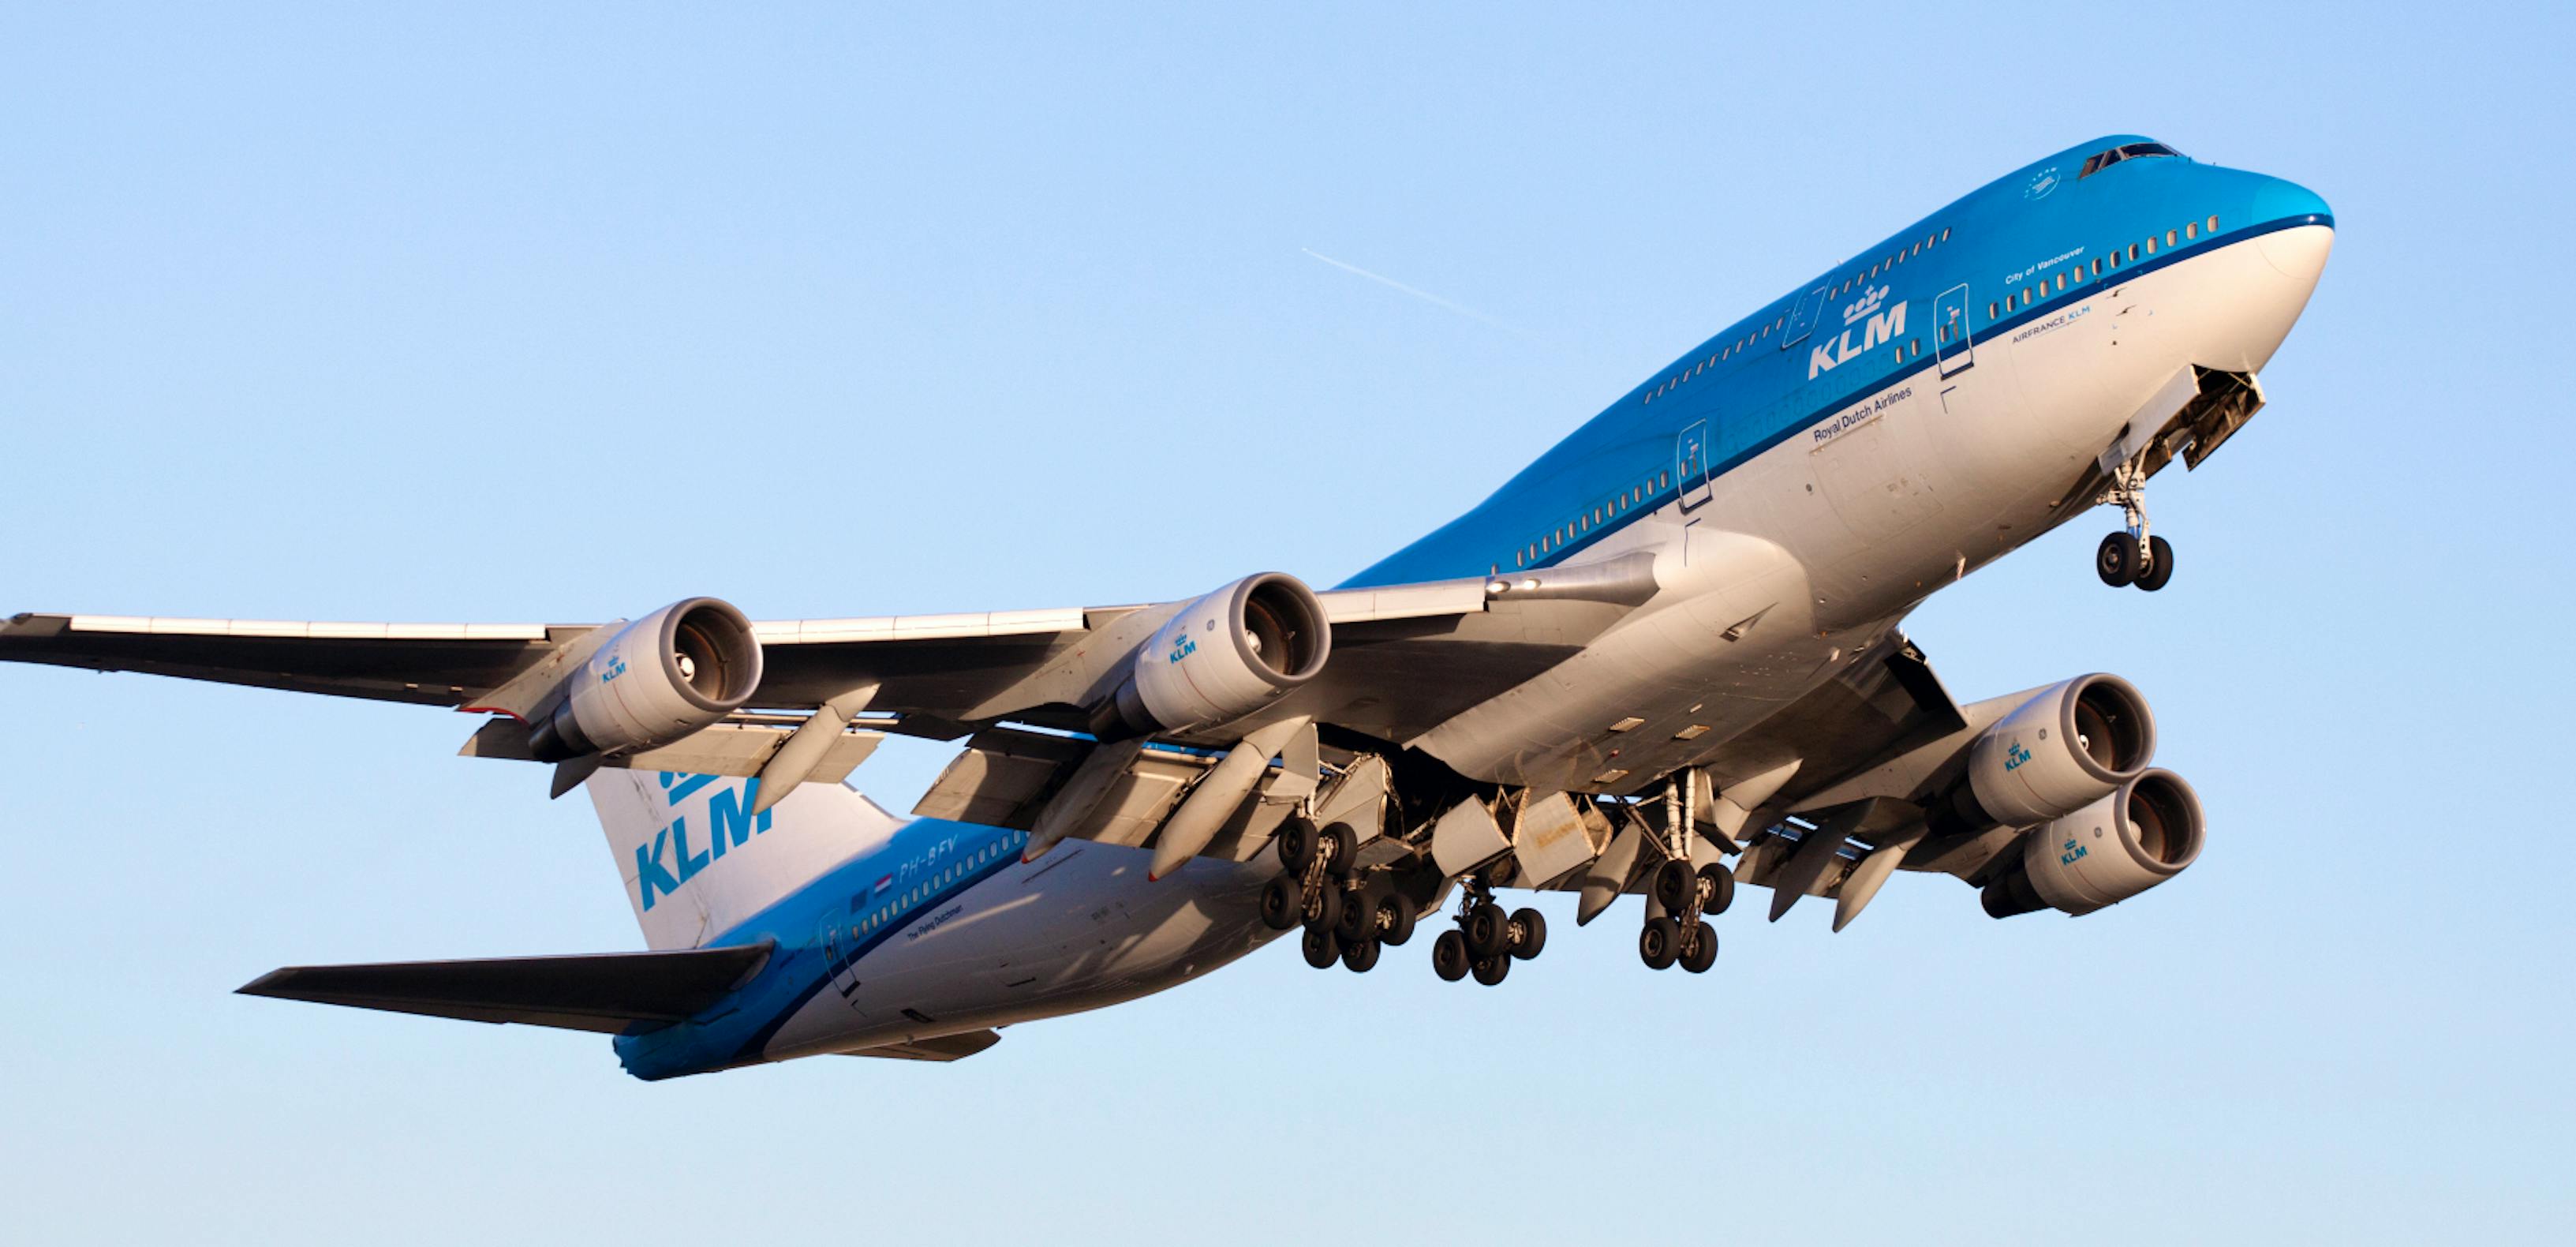 Letzter Flug der Boeing 747 Combi: KLM verabschiedet Jumbo-Jet nun